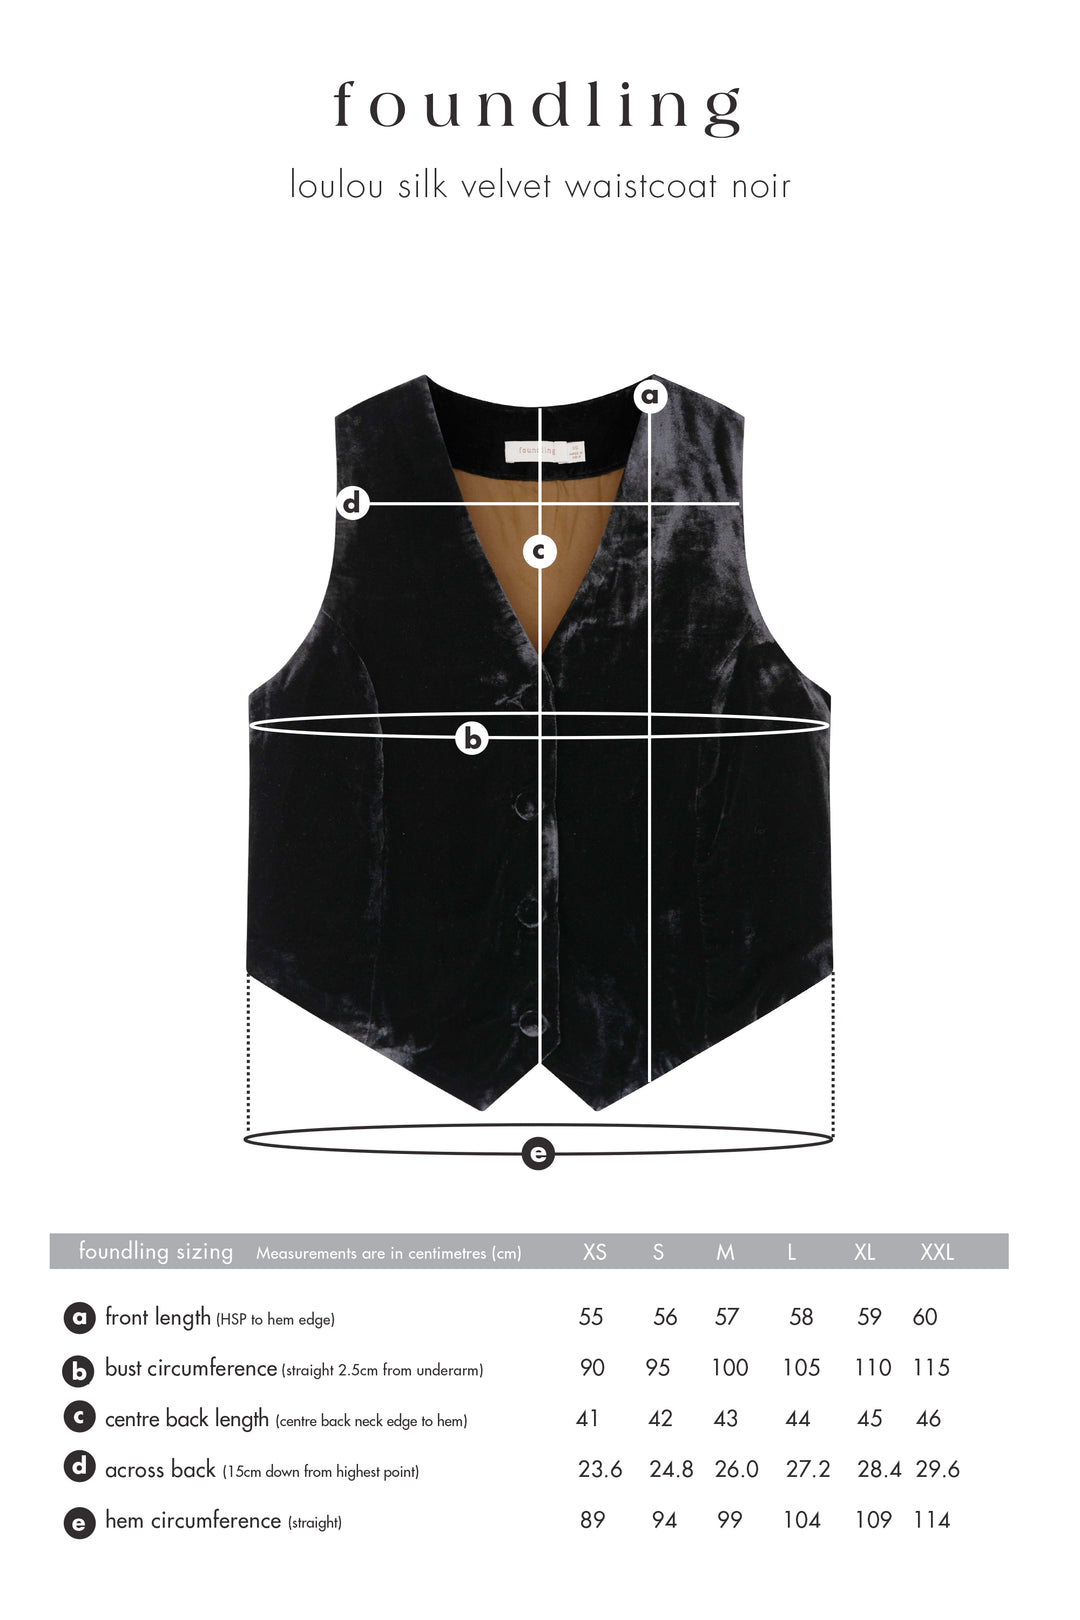 black silk velvet fully lined waistcoat foundling size guide